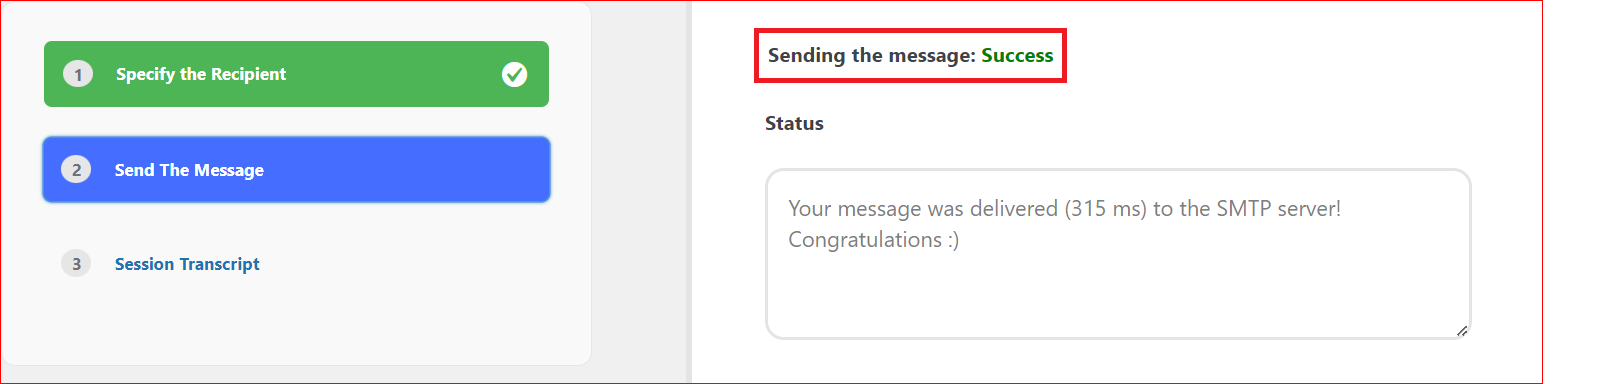 Email Sending Status